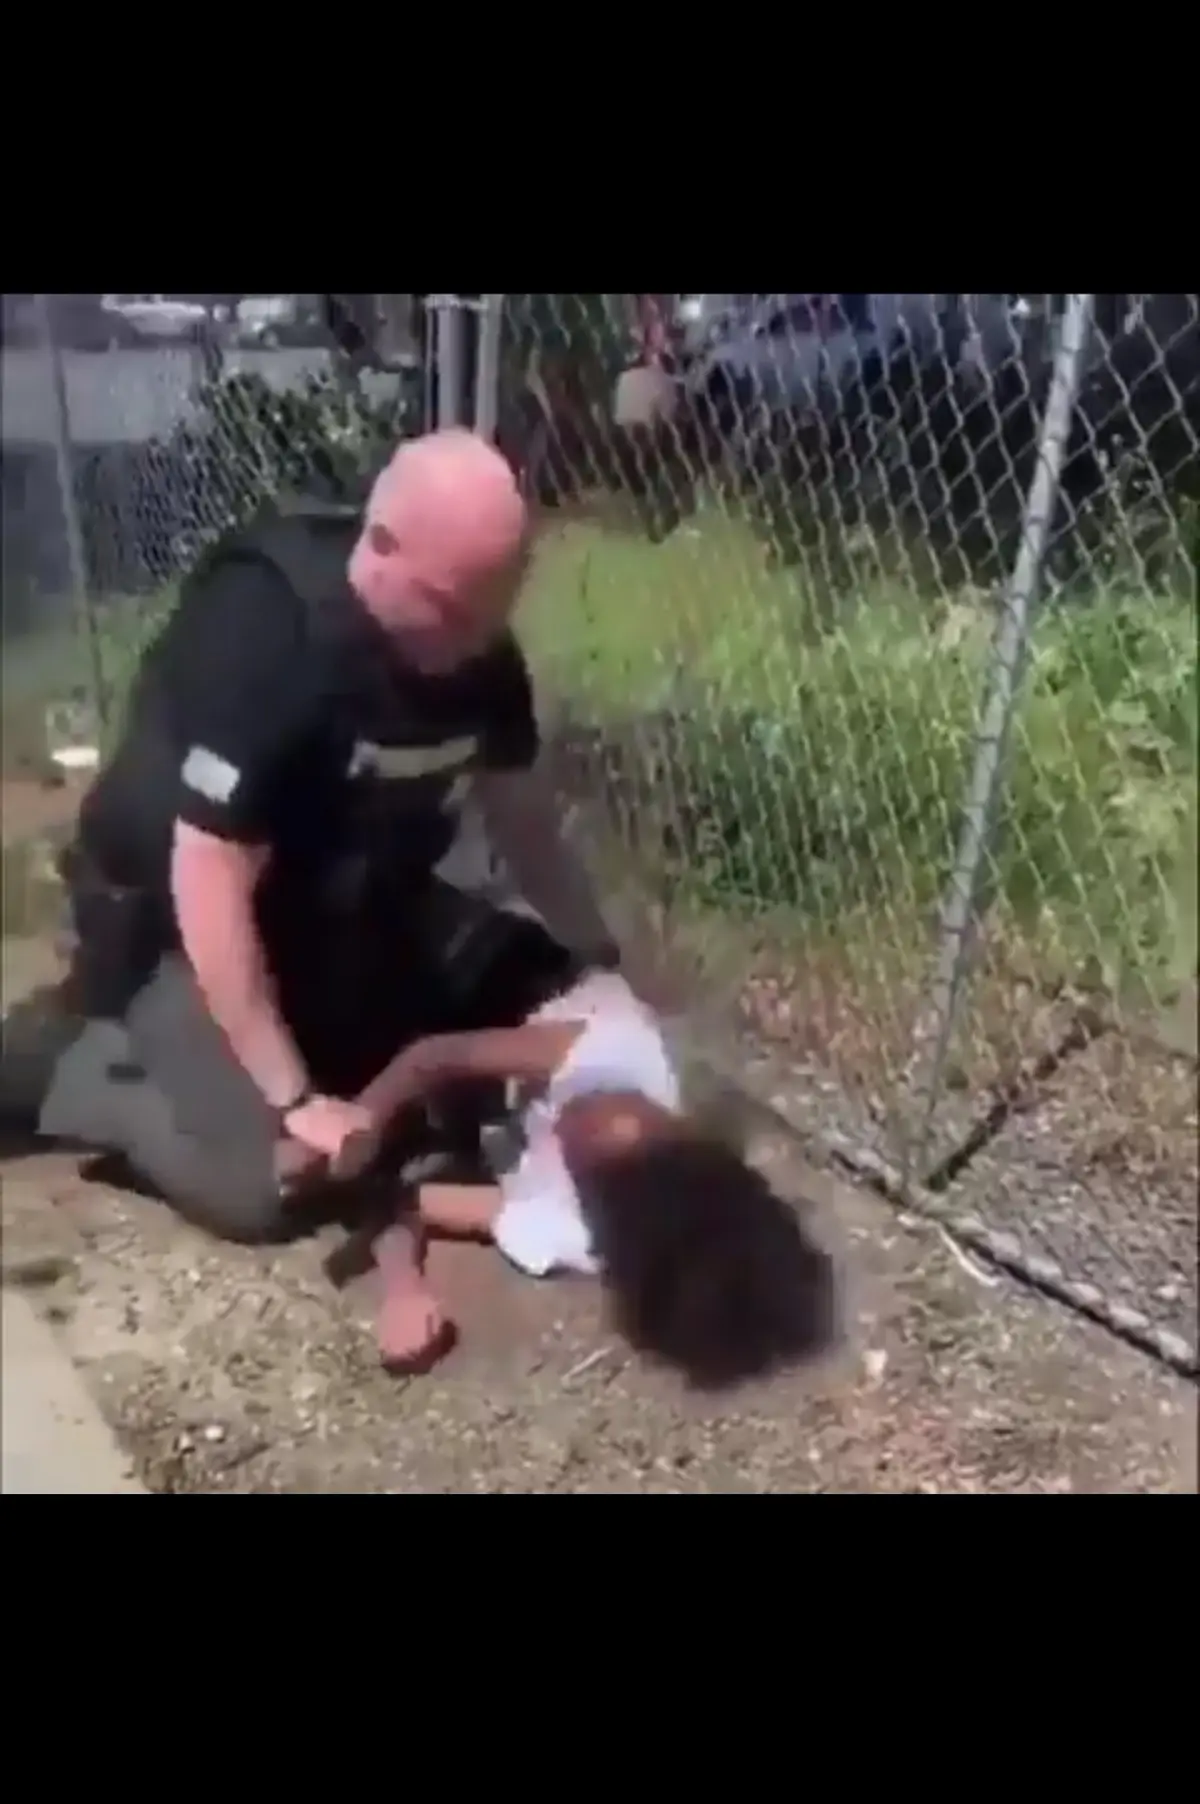 پلیس آمریکا یک دختر خردسال سیاه پوست را زیر مشت و لگد گرفت+فیلم